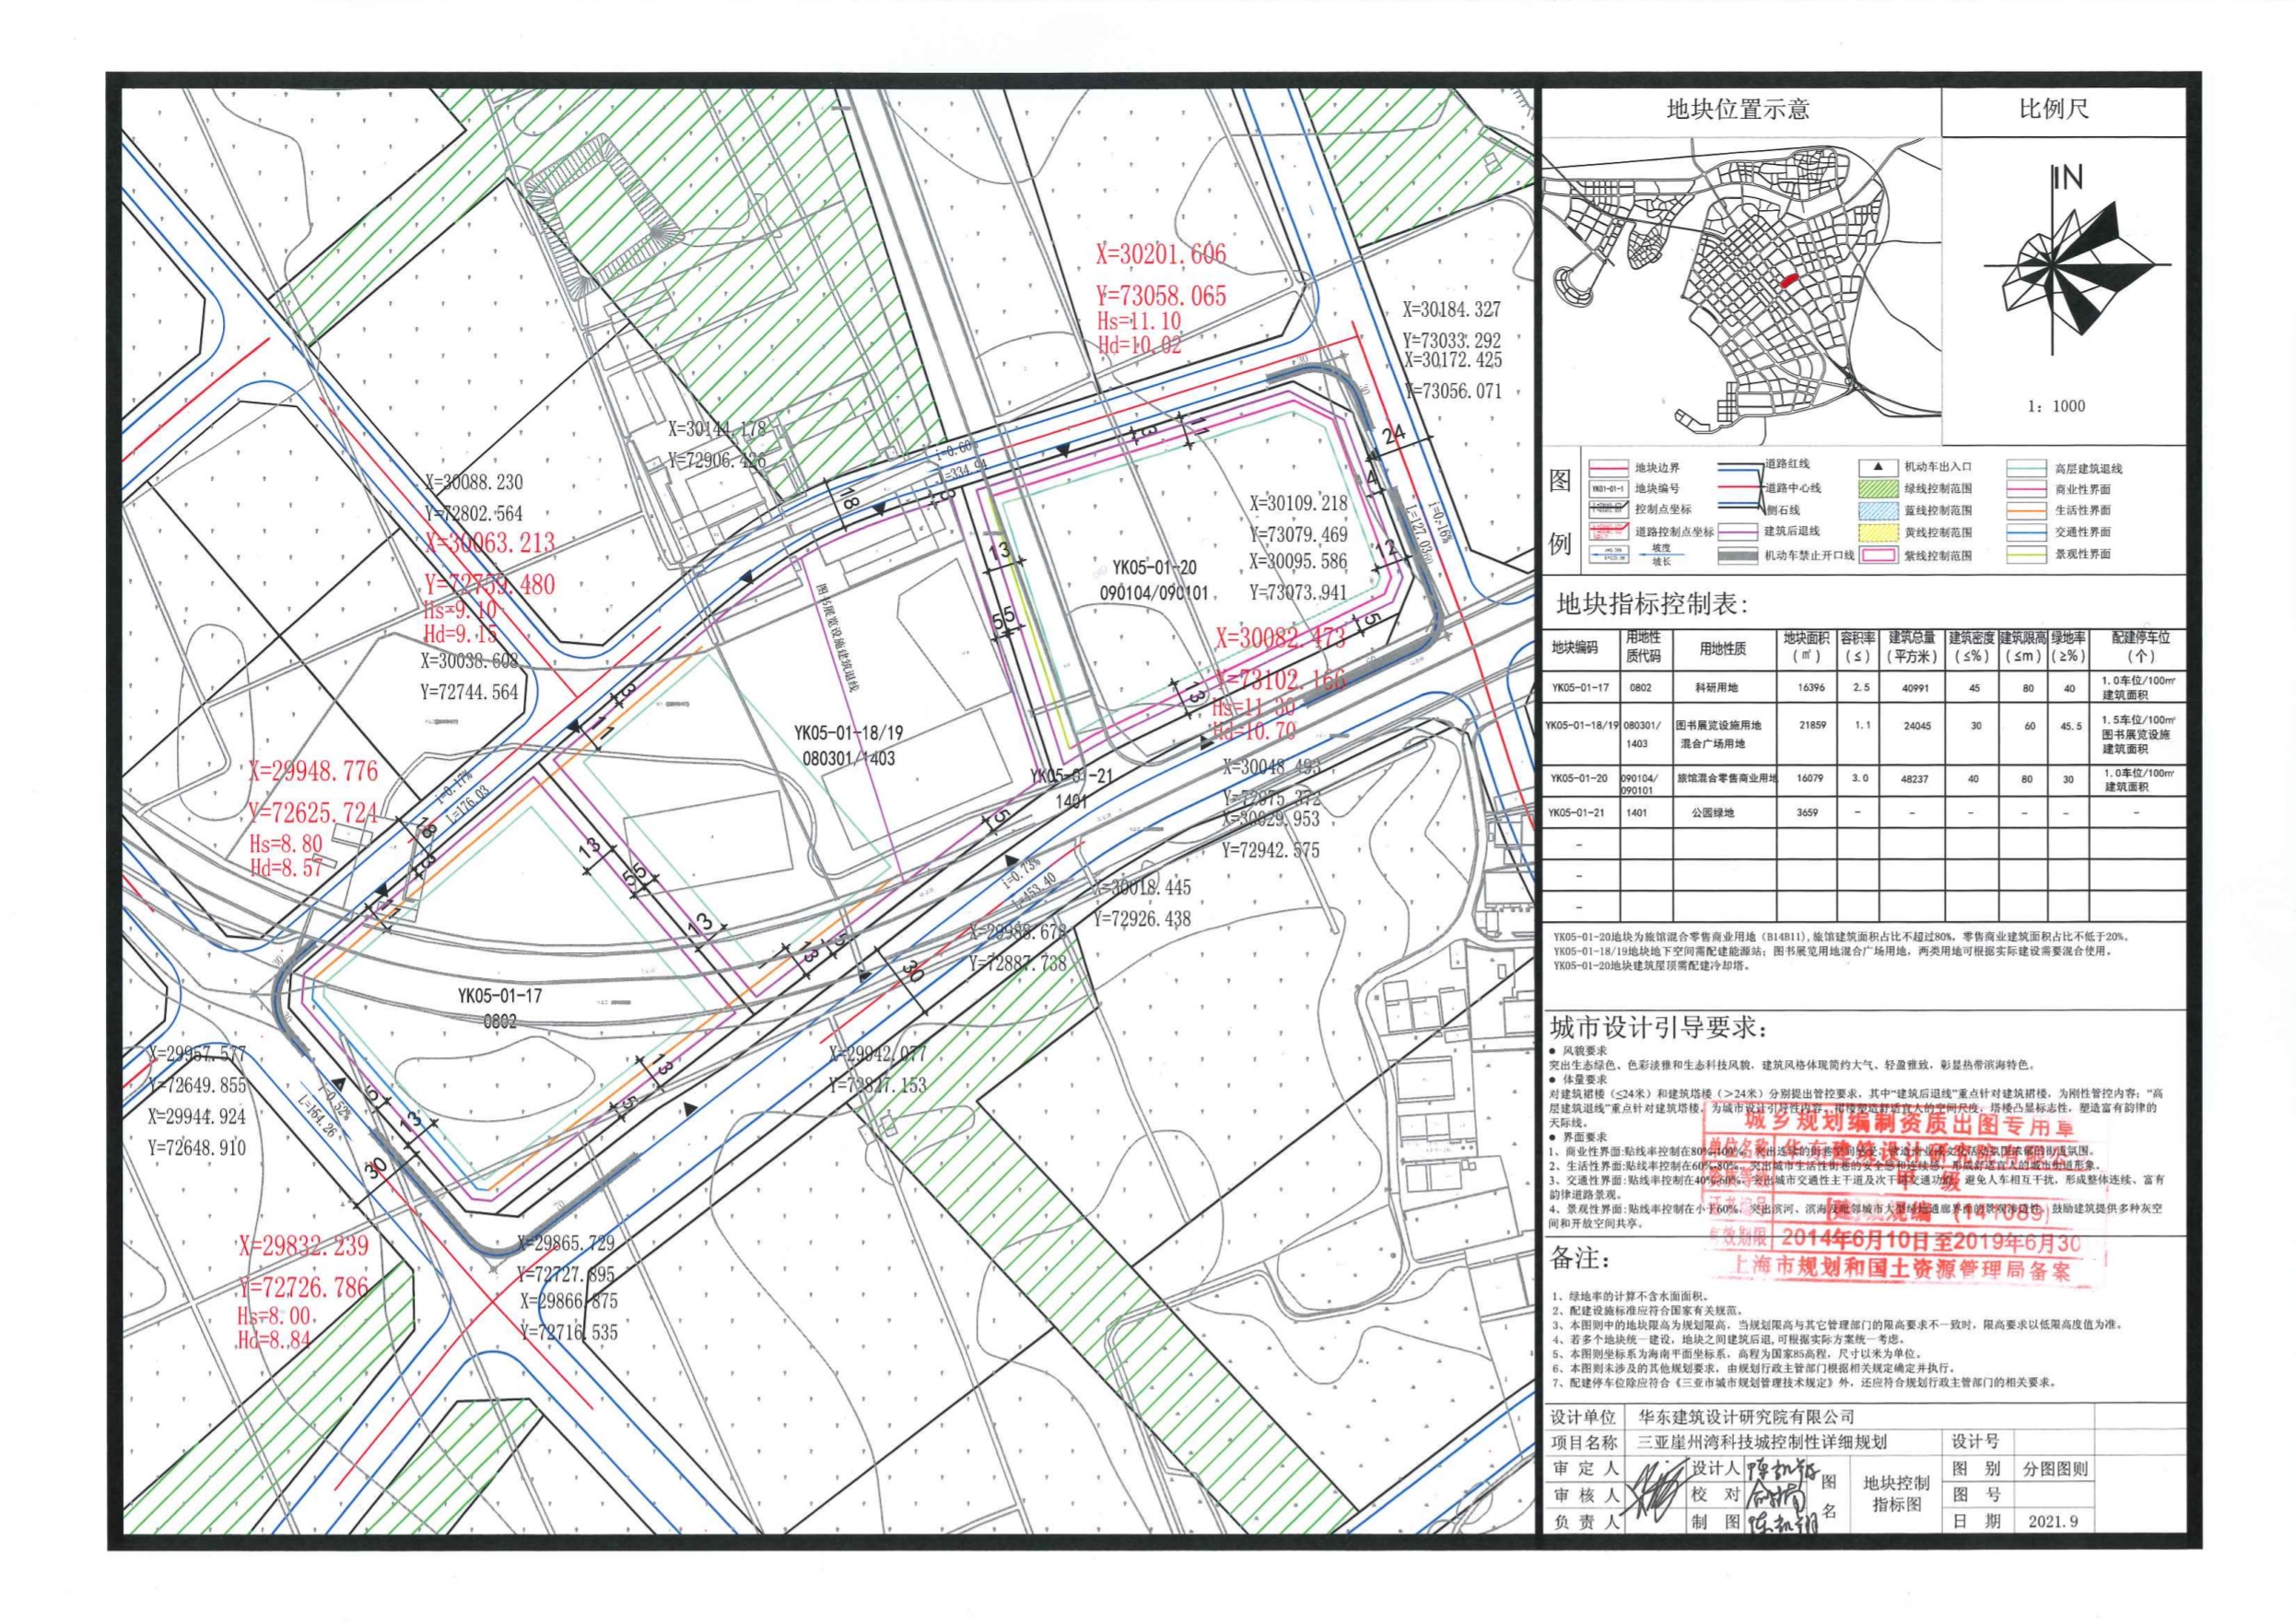 《三亚崖州湾科技城控制性详细规划》YK05-01-18/19地块规划分图则的批后公布